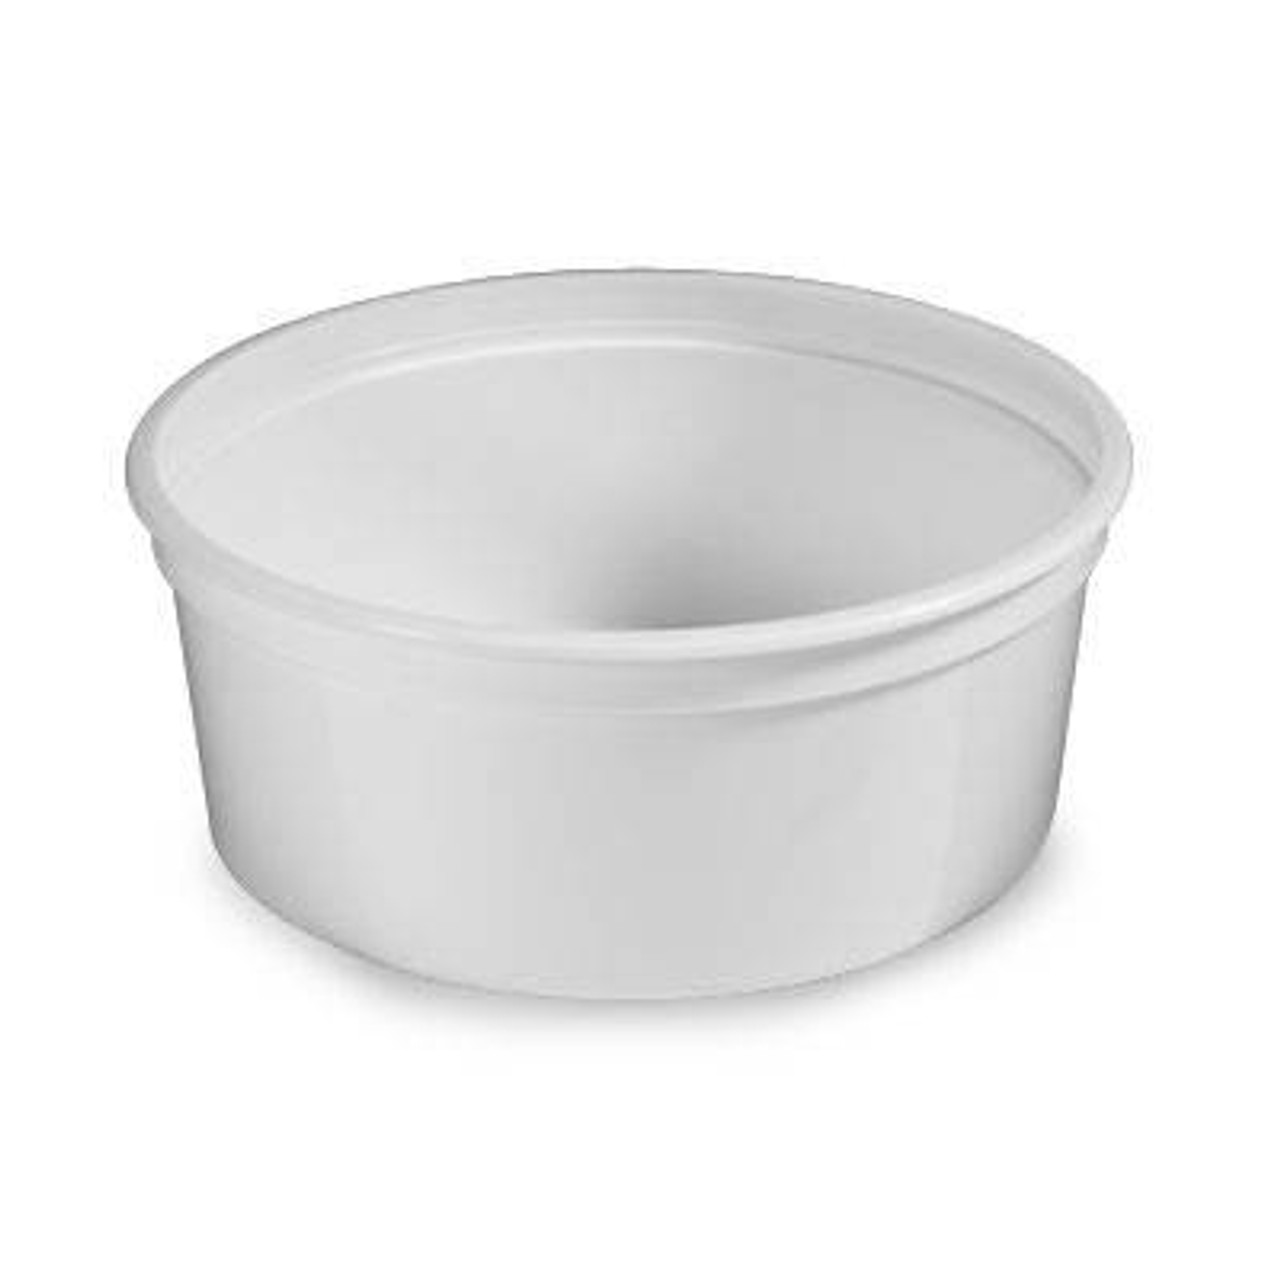 Açaí bowl with Lid (24 Oz)